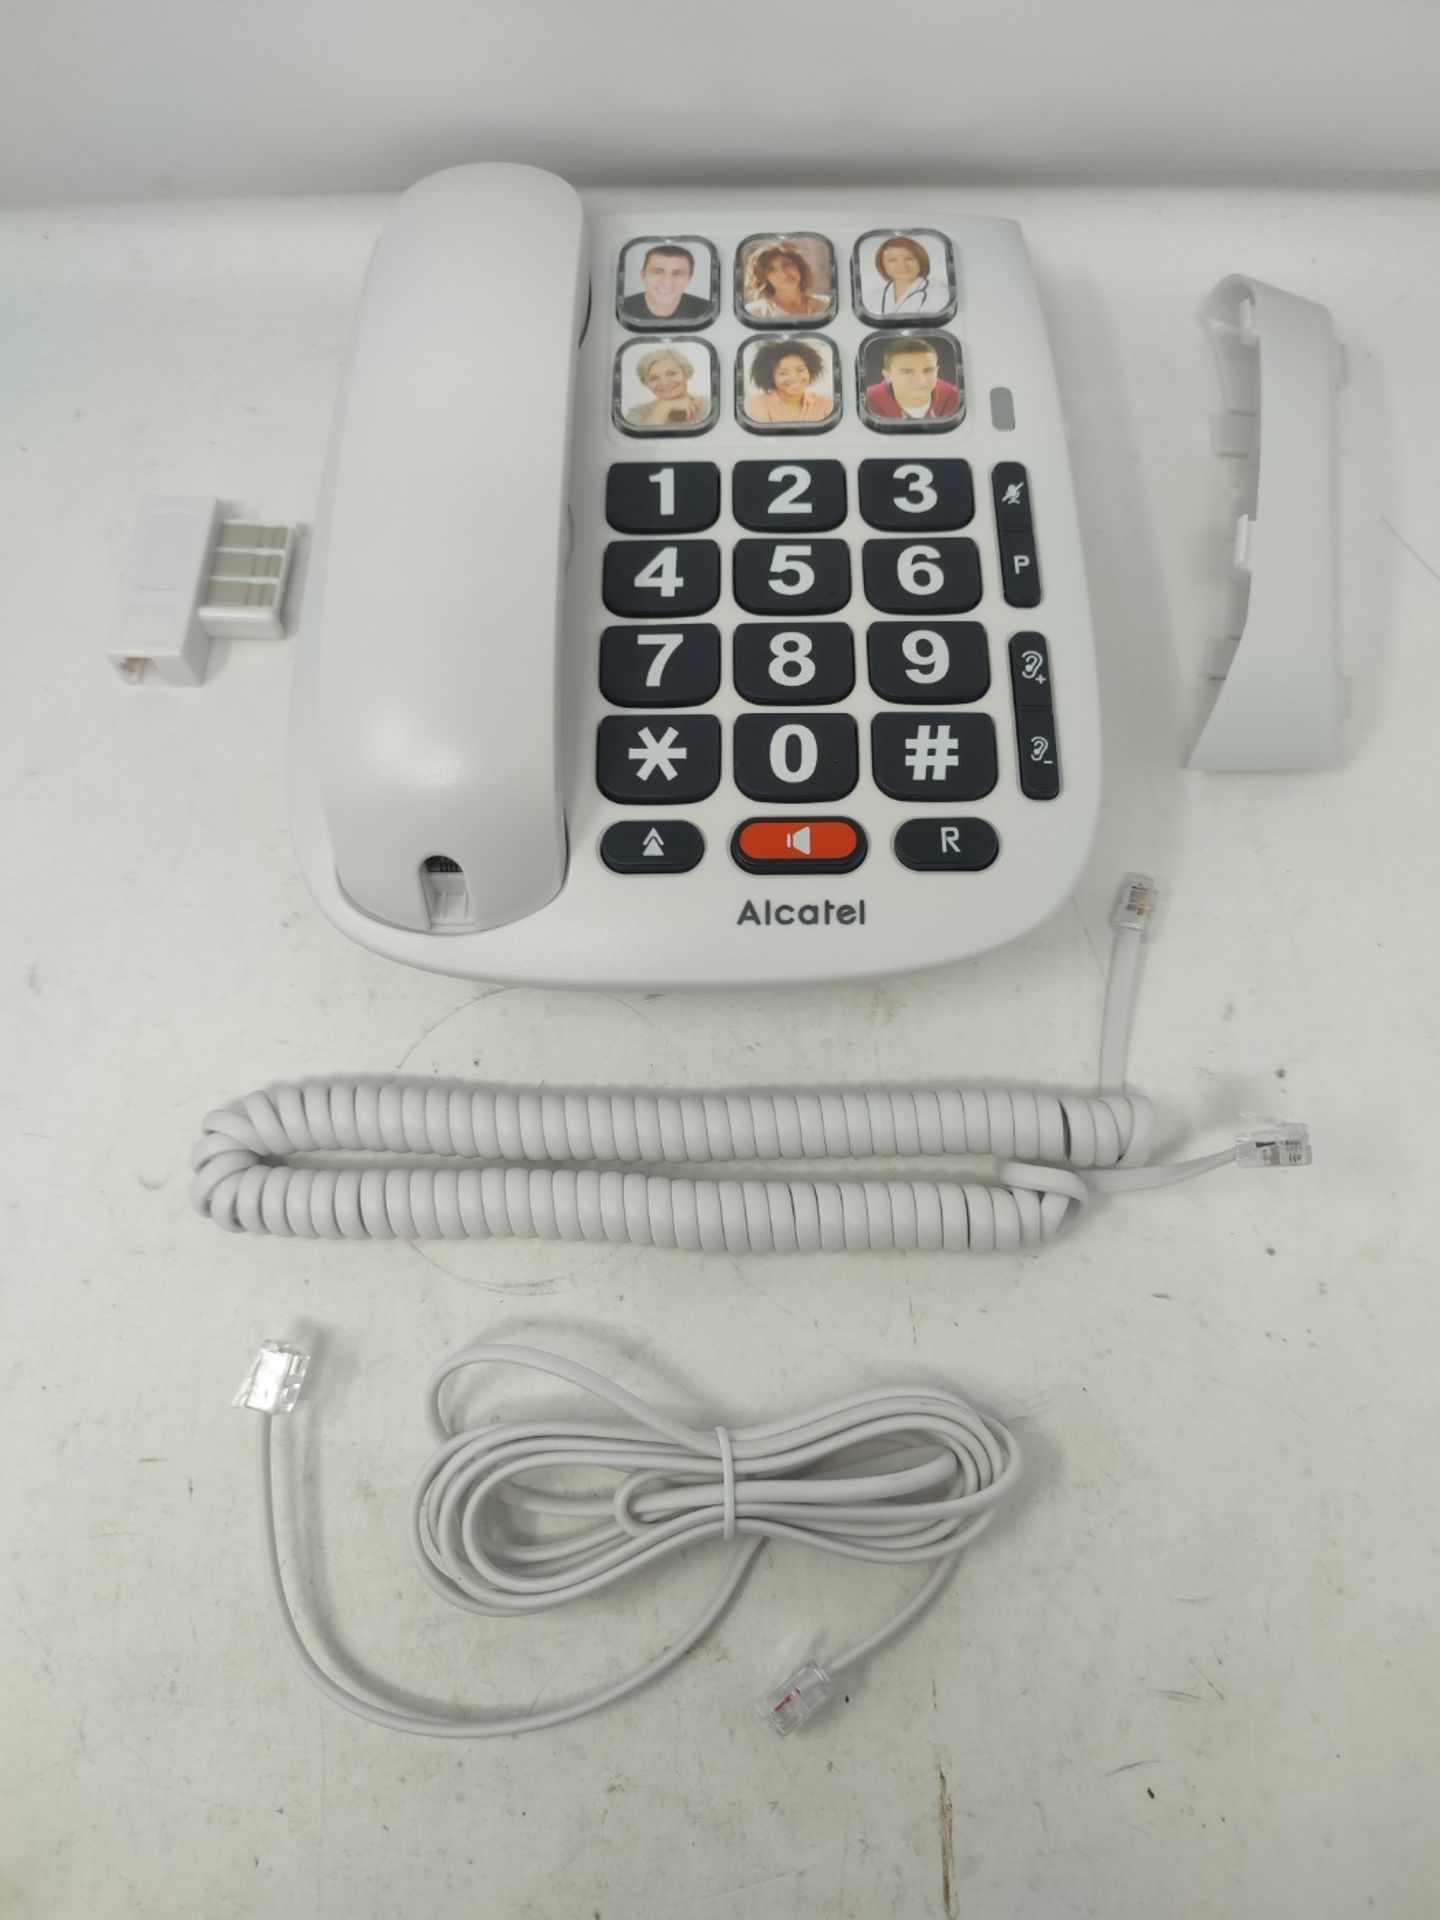 Alcatel Max 10 Corded Phone for Seniors White. - Bild 3 aus 3